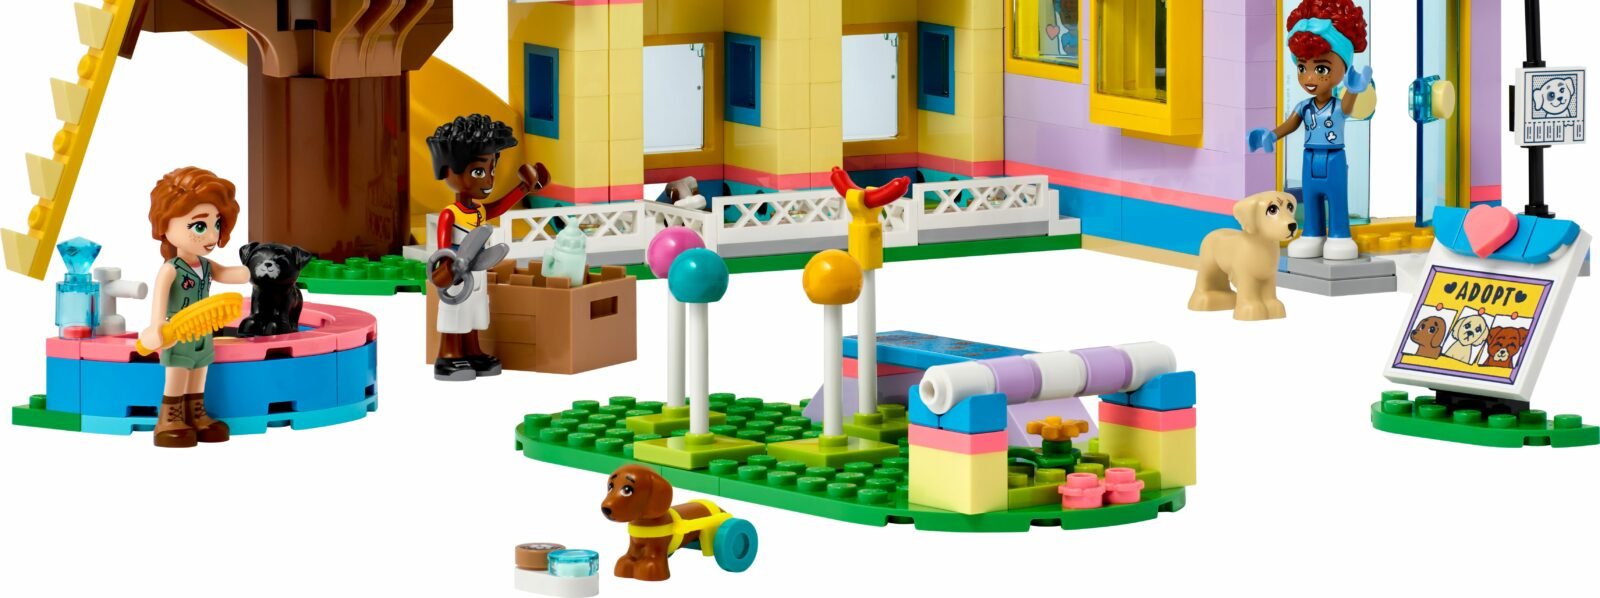 Ansicht eines LEGO-Friend Hauses mit verschiedenen Figuren und Lego hunden